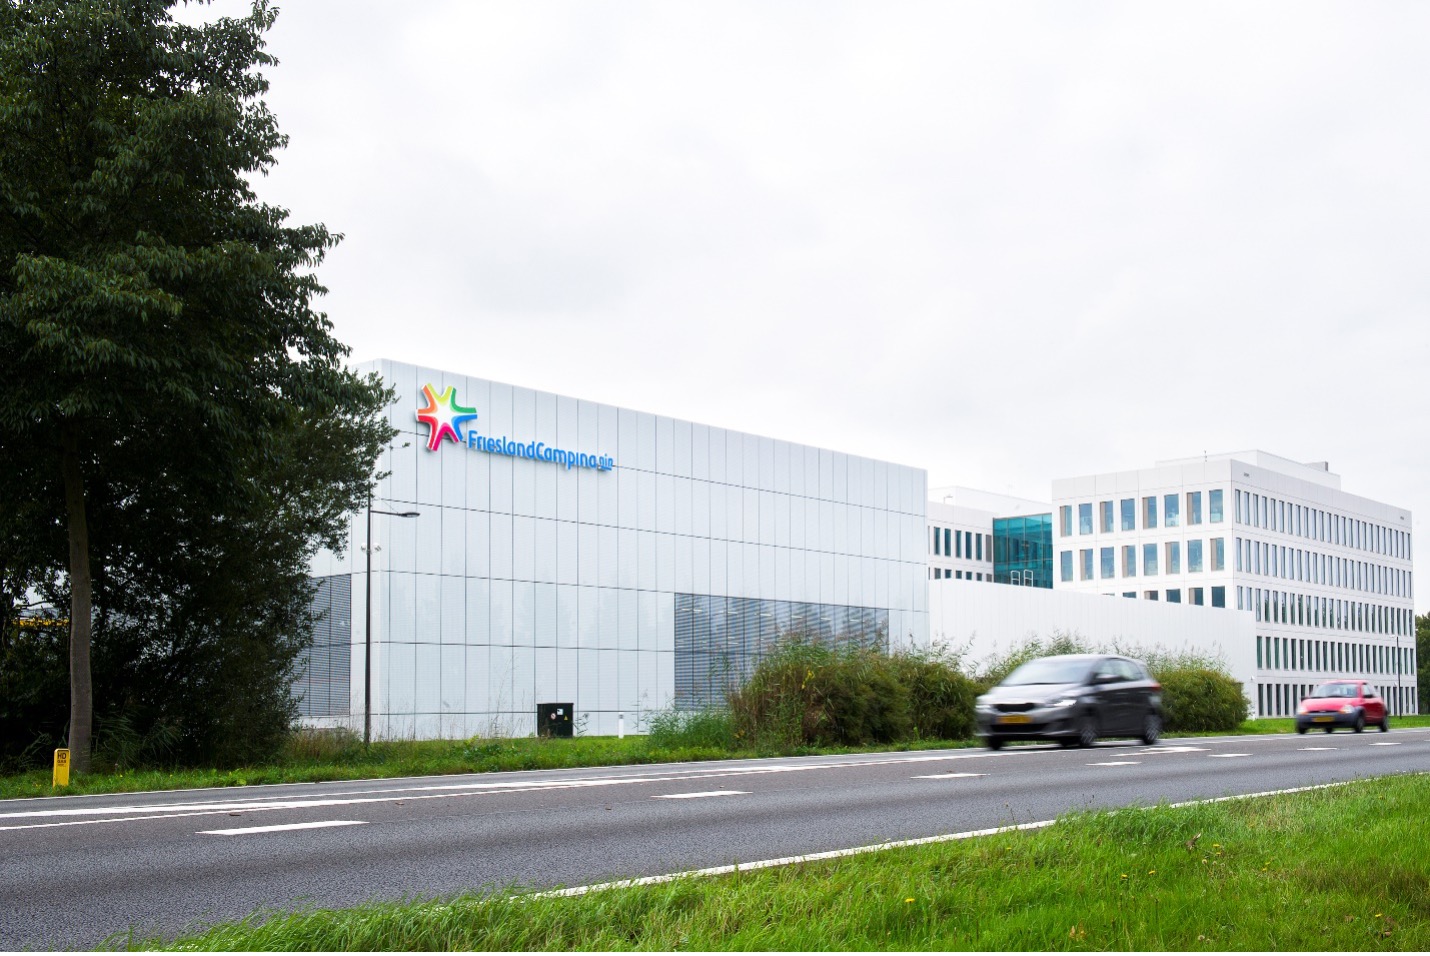 Trung tâm Nghiên cứu và Phát triển (R&D) của FrieslandCampina tọa lạc tại Wageningen, Hà Lan